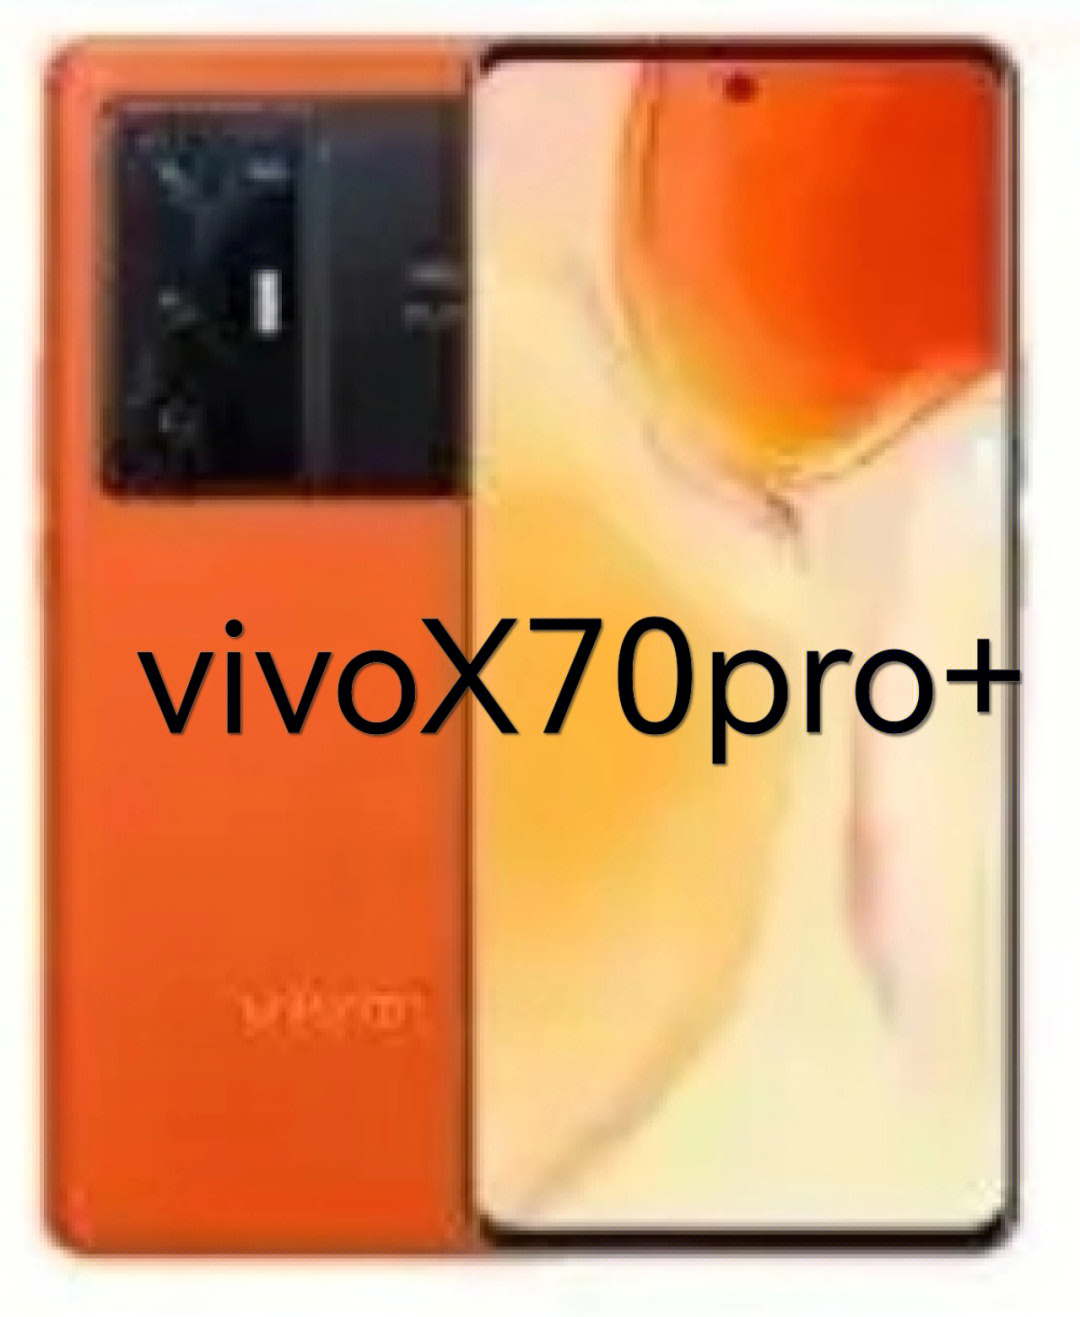 最近新出的vivox70pro 支持5g,价格6999,华为p50pro4g网络,价格7499